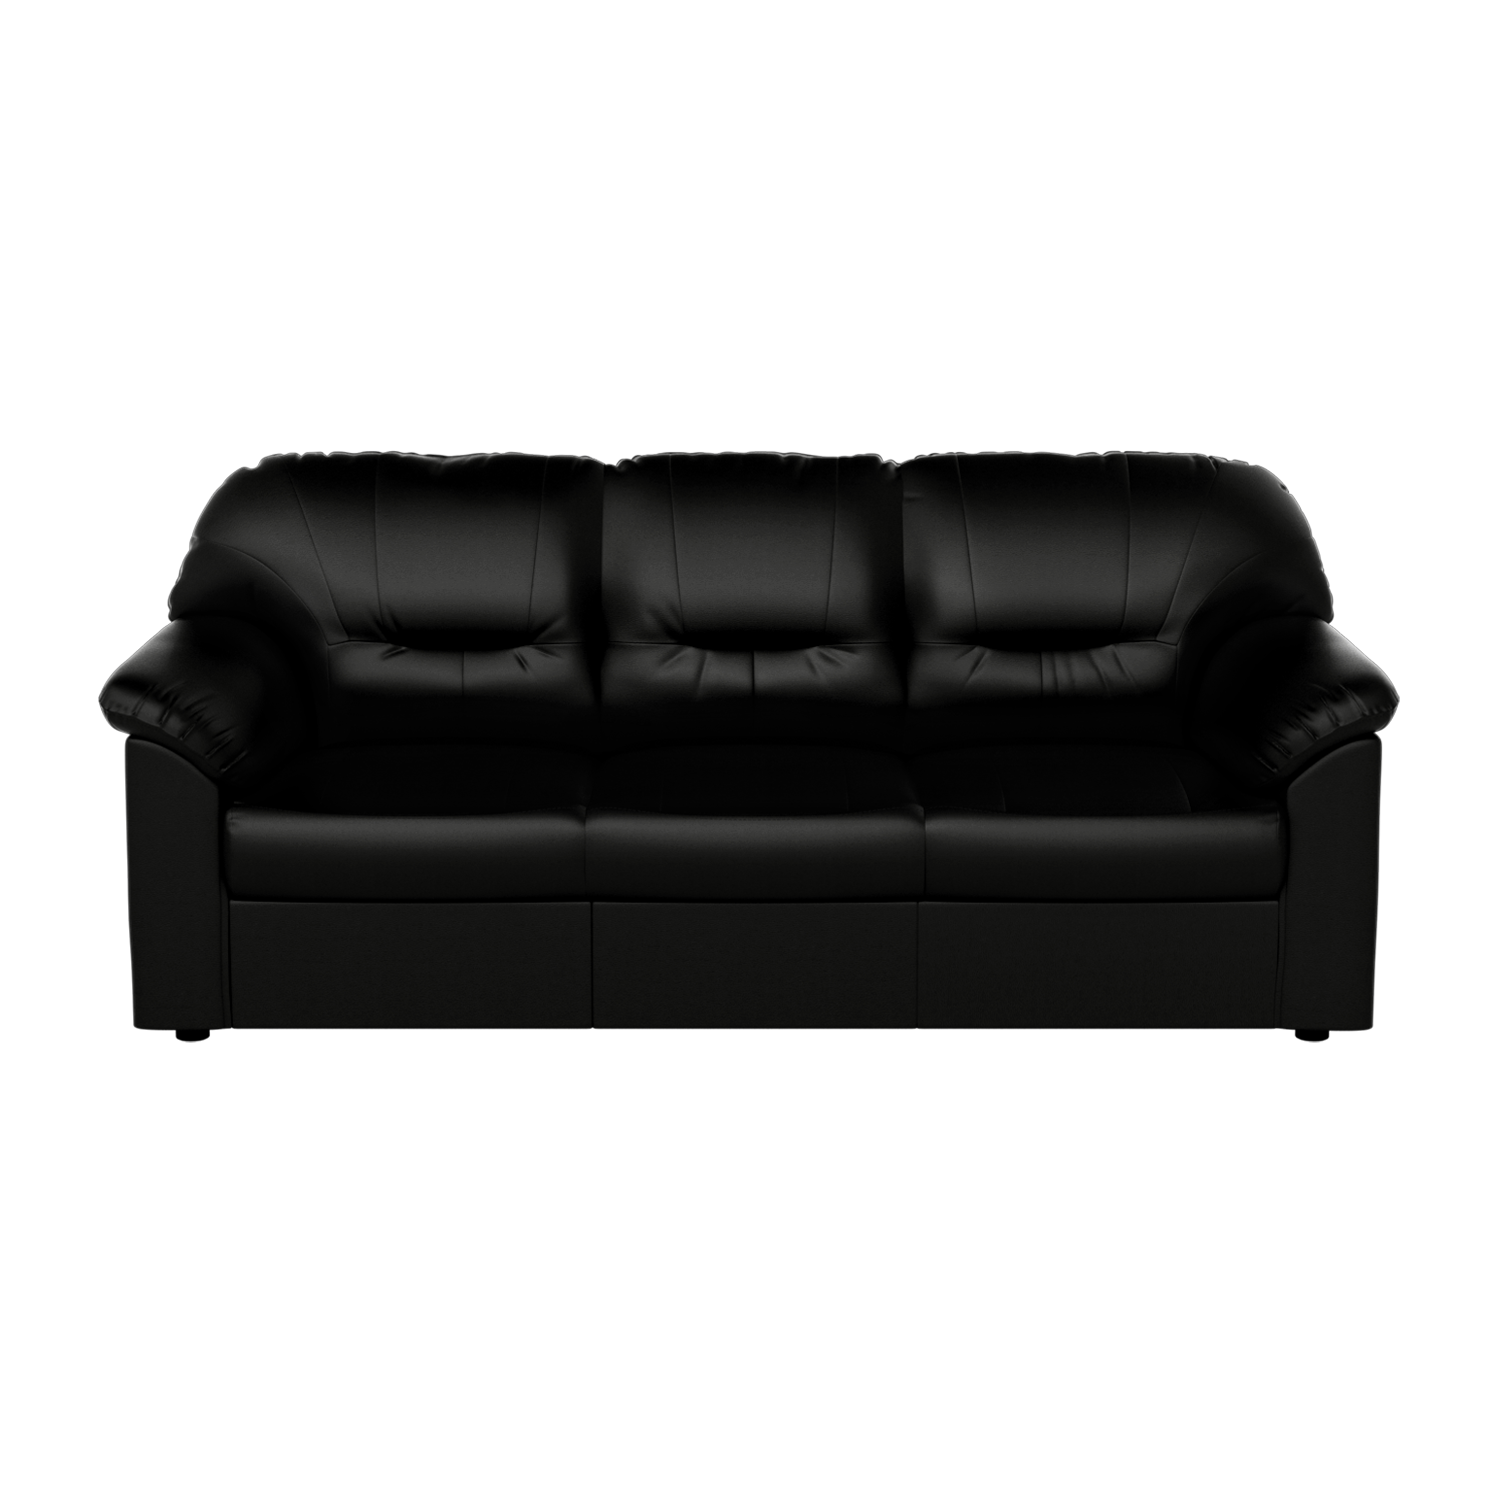 Rio 3 Seater Sofa In Leatherette, Black Sofa Leather